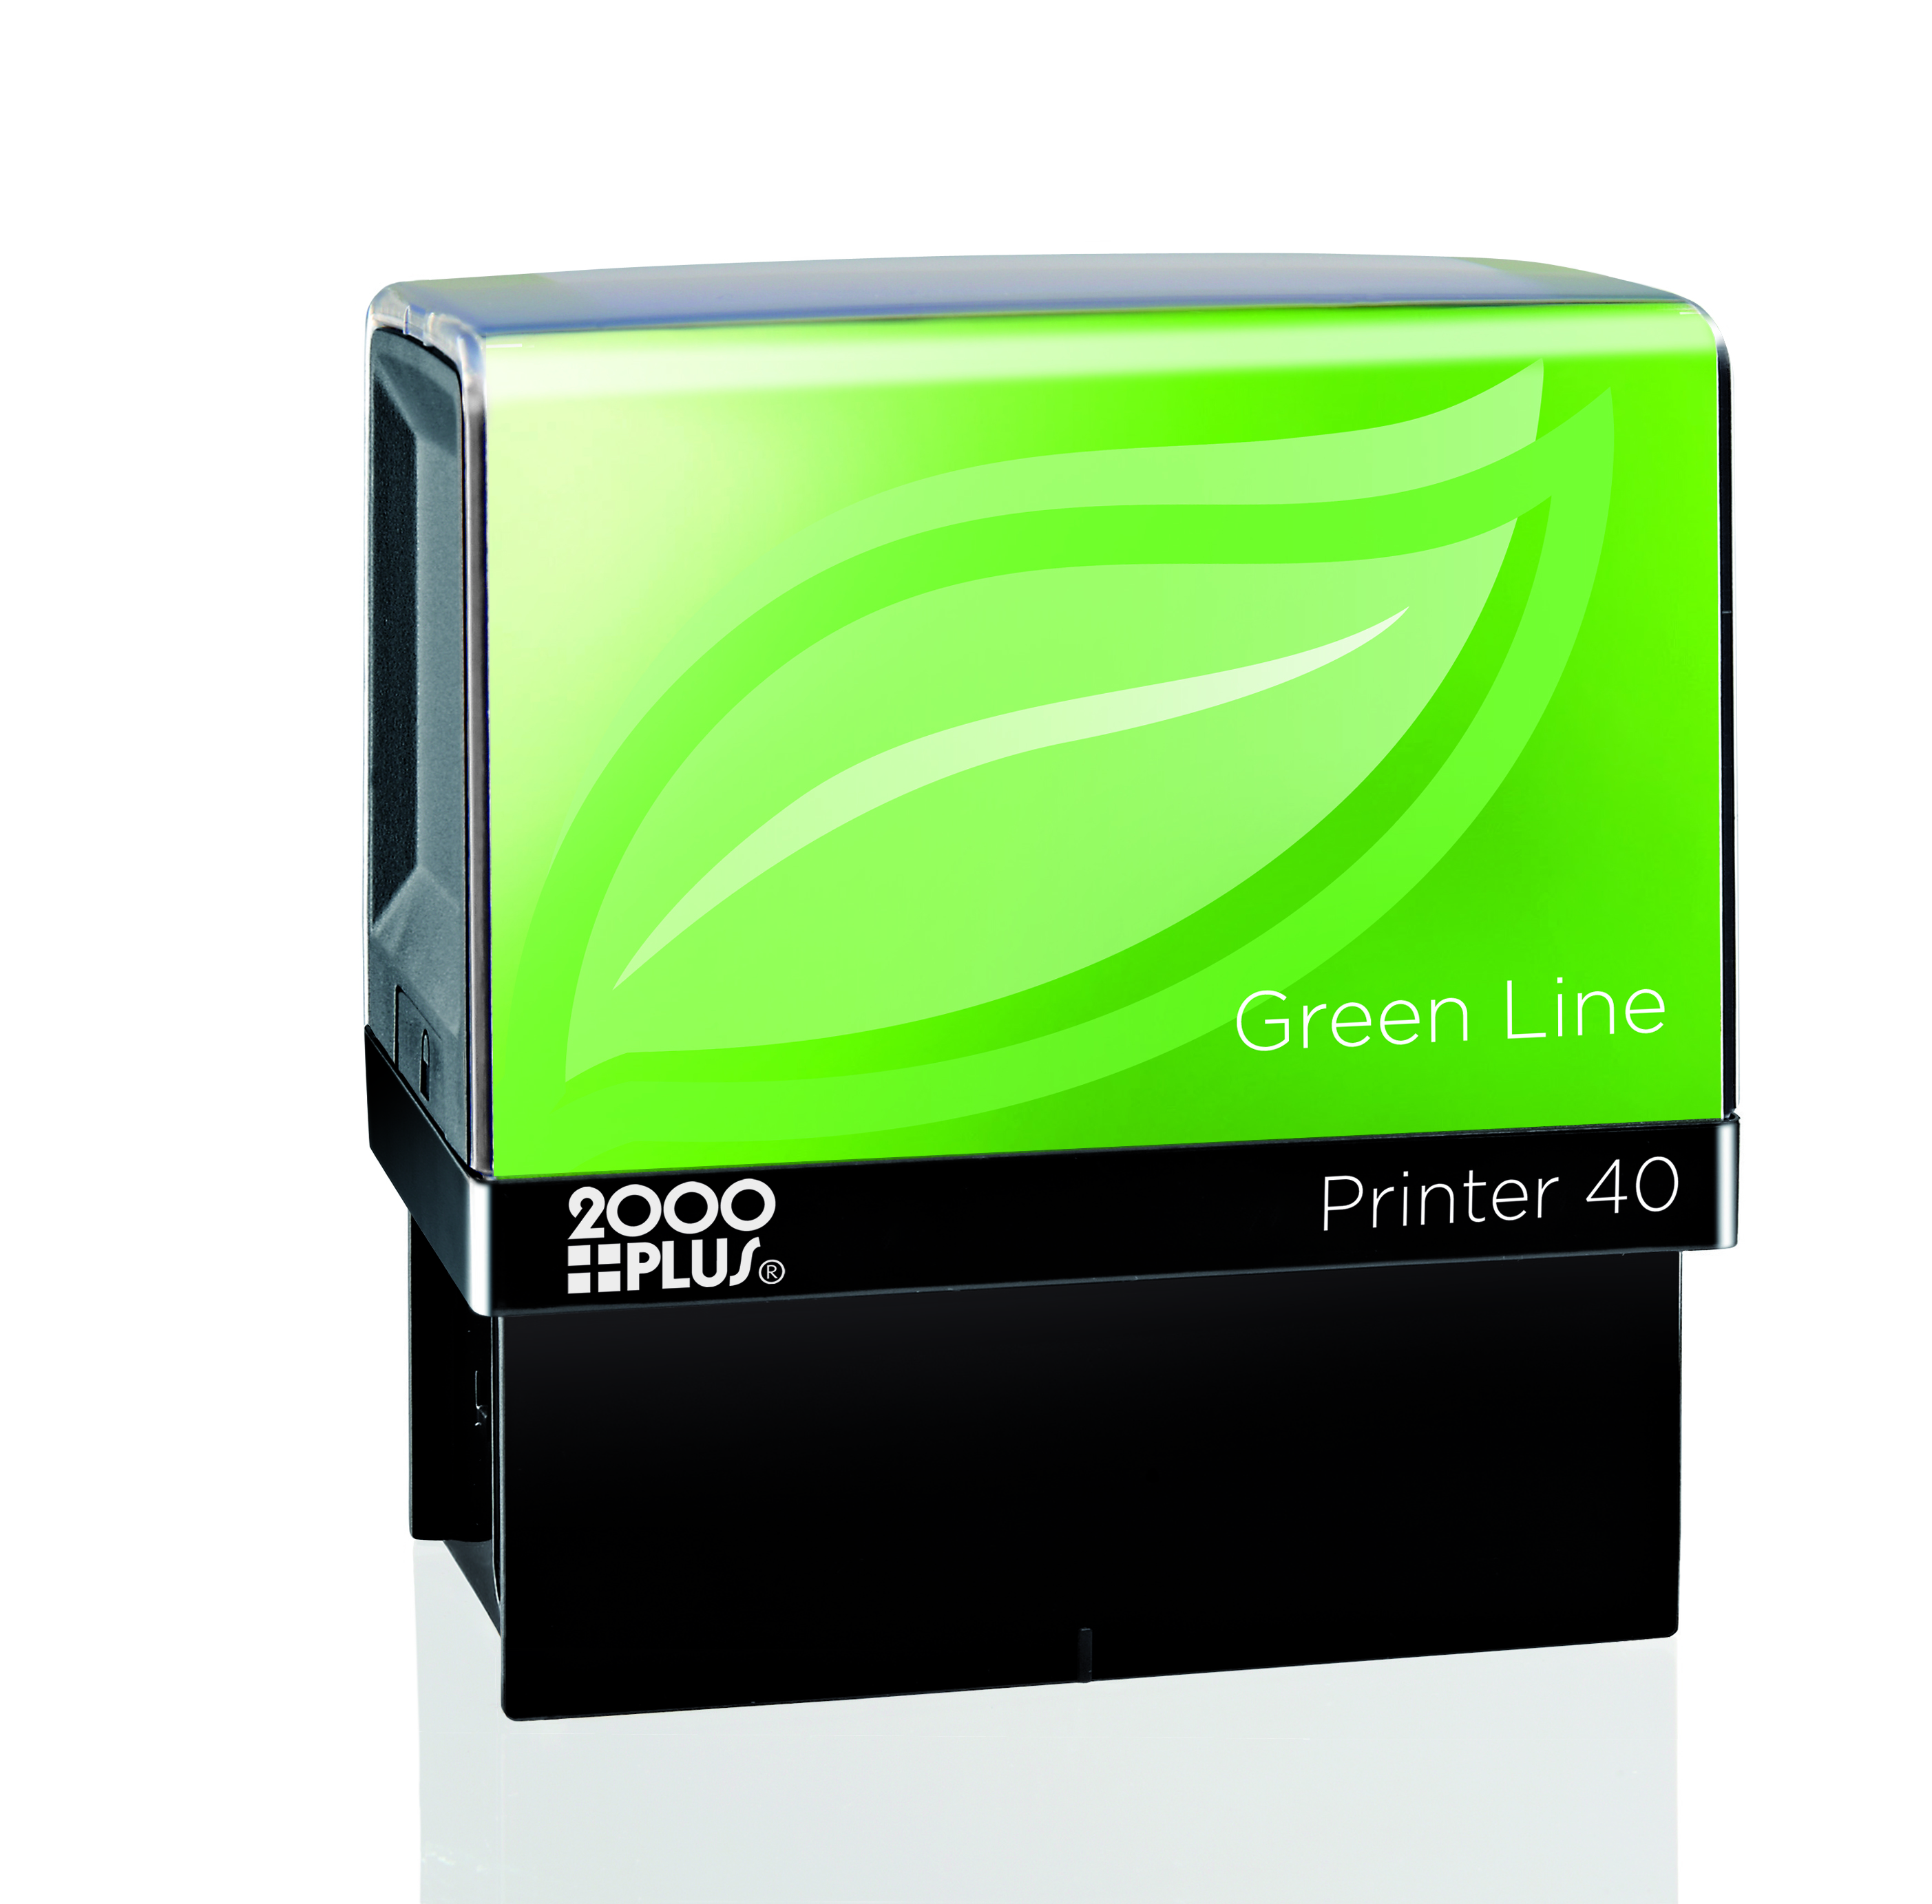 Printer 40 Greenline